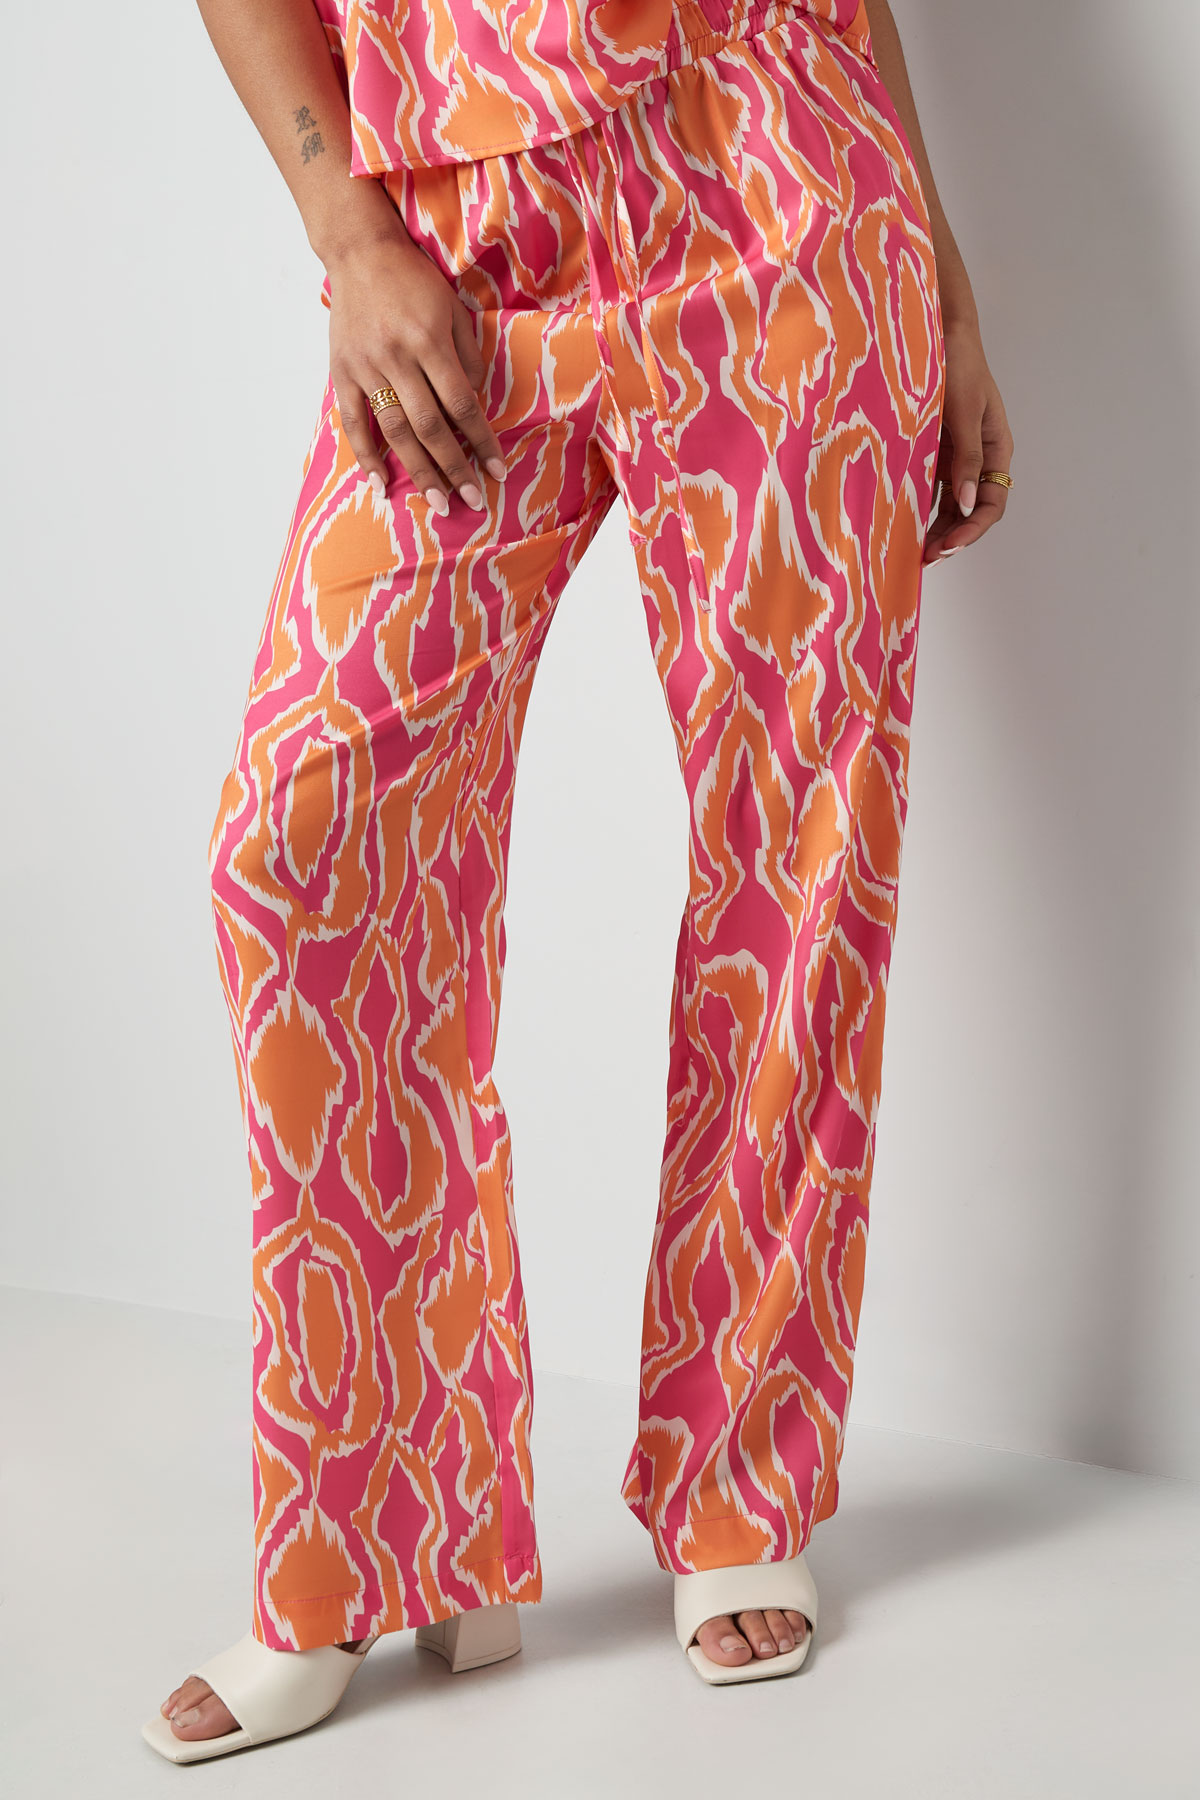 Bunte Hose mit Aufdruck - Orange/Pink  Bild4